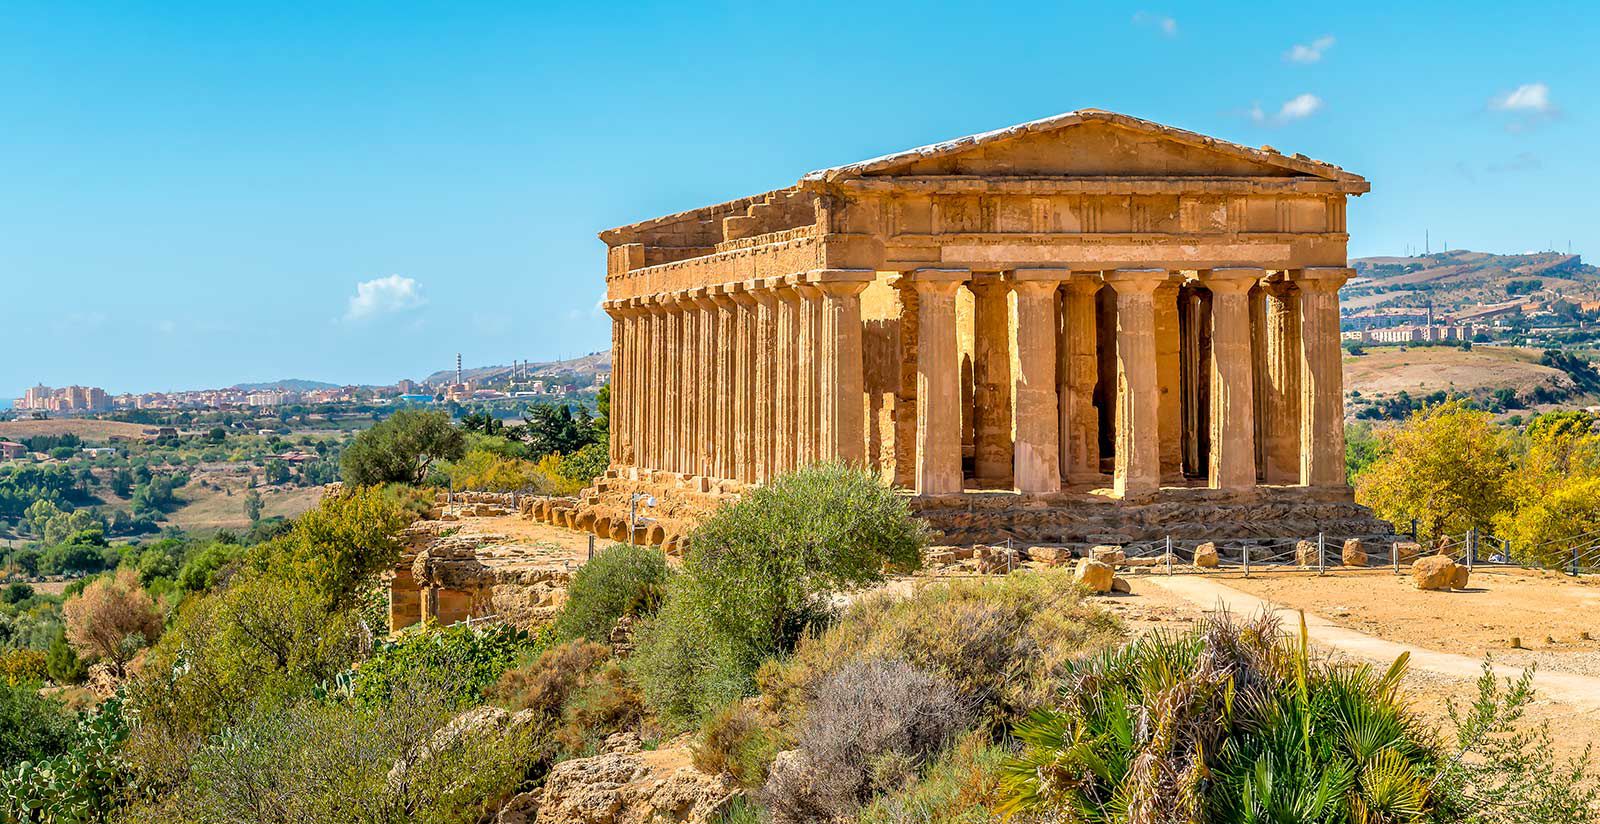 Beni culturali, al via biglietto unico per 4 siti archeologici siciliani con il tagliando “La Sicilia dei Templi”